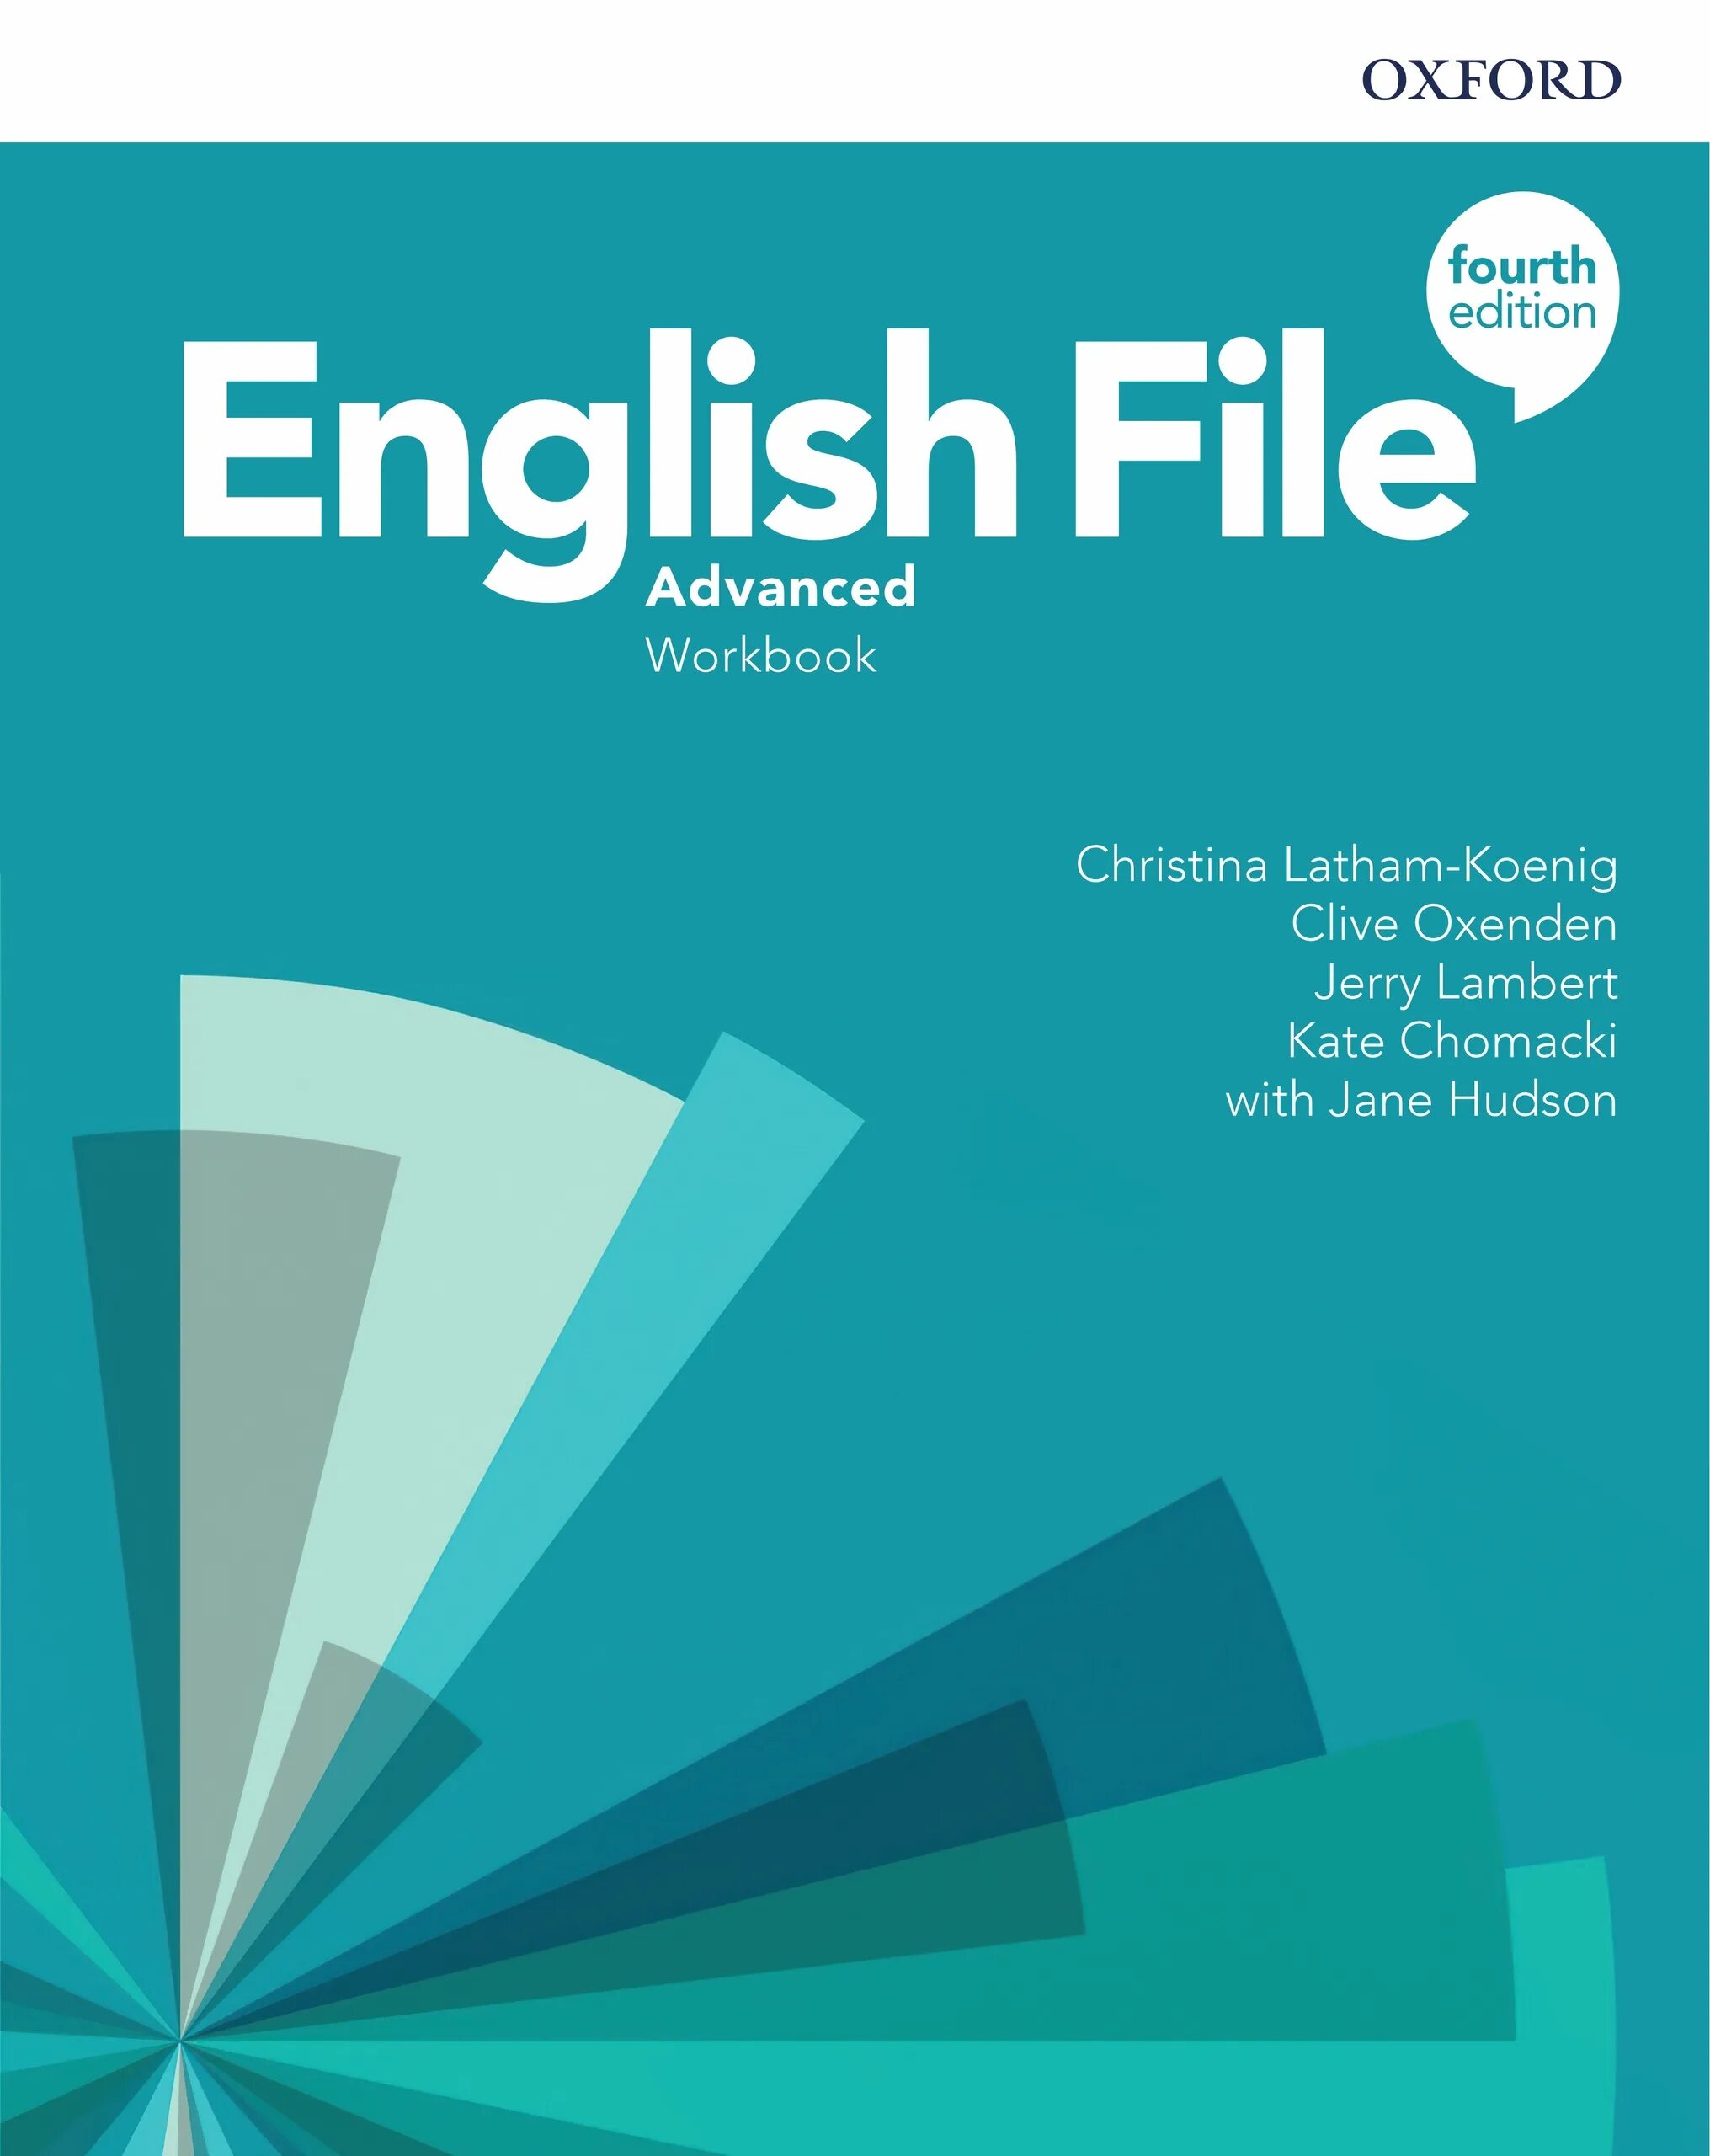 English file Advanced 4th. English file Advanced 4th Edition. English file 4 Advanced. English file advanced plus